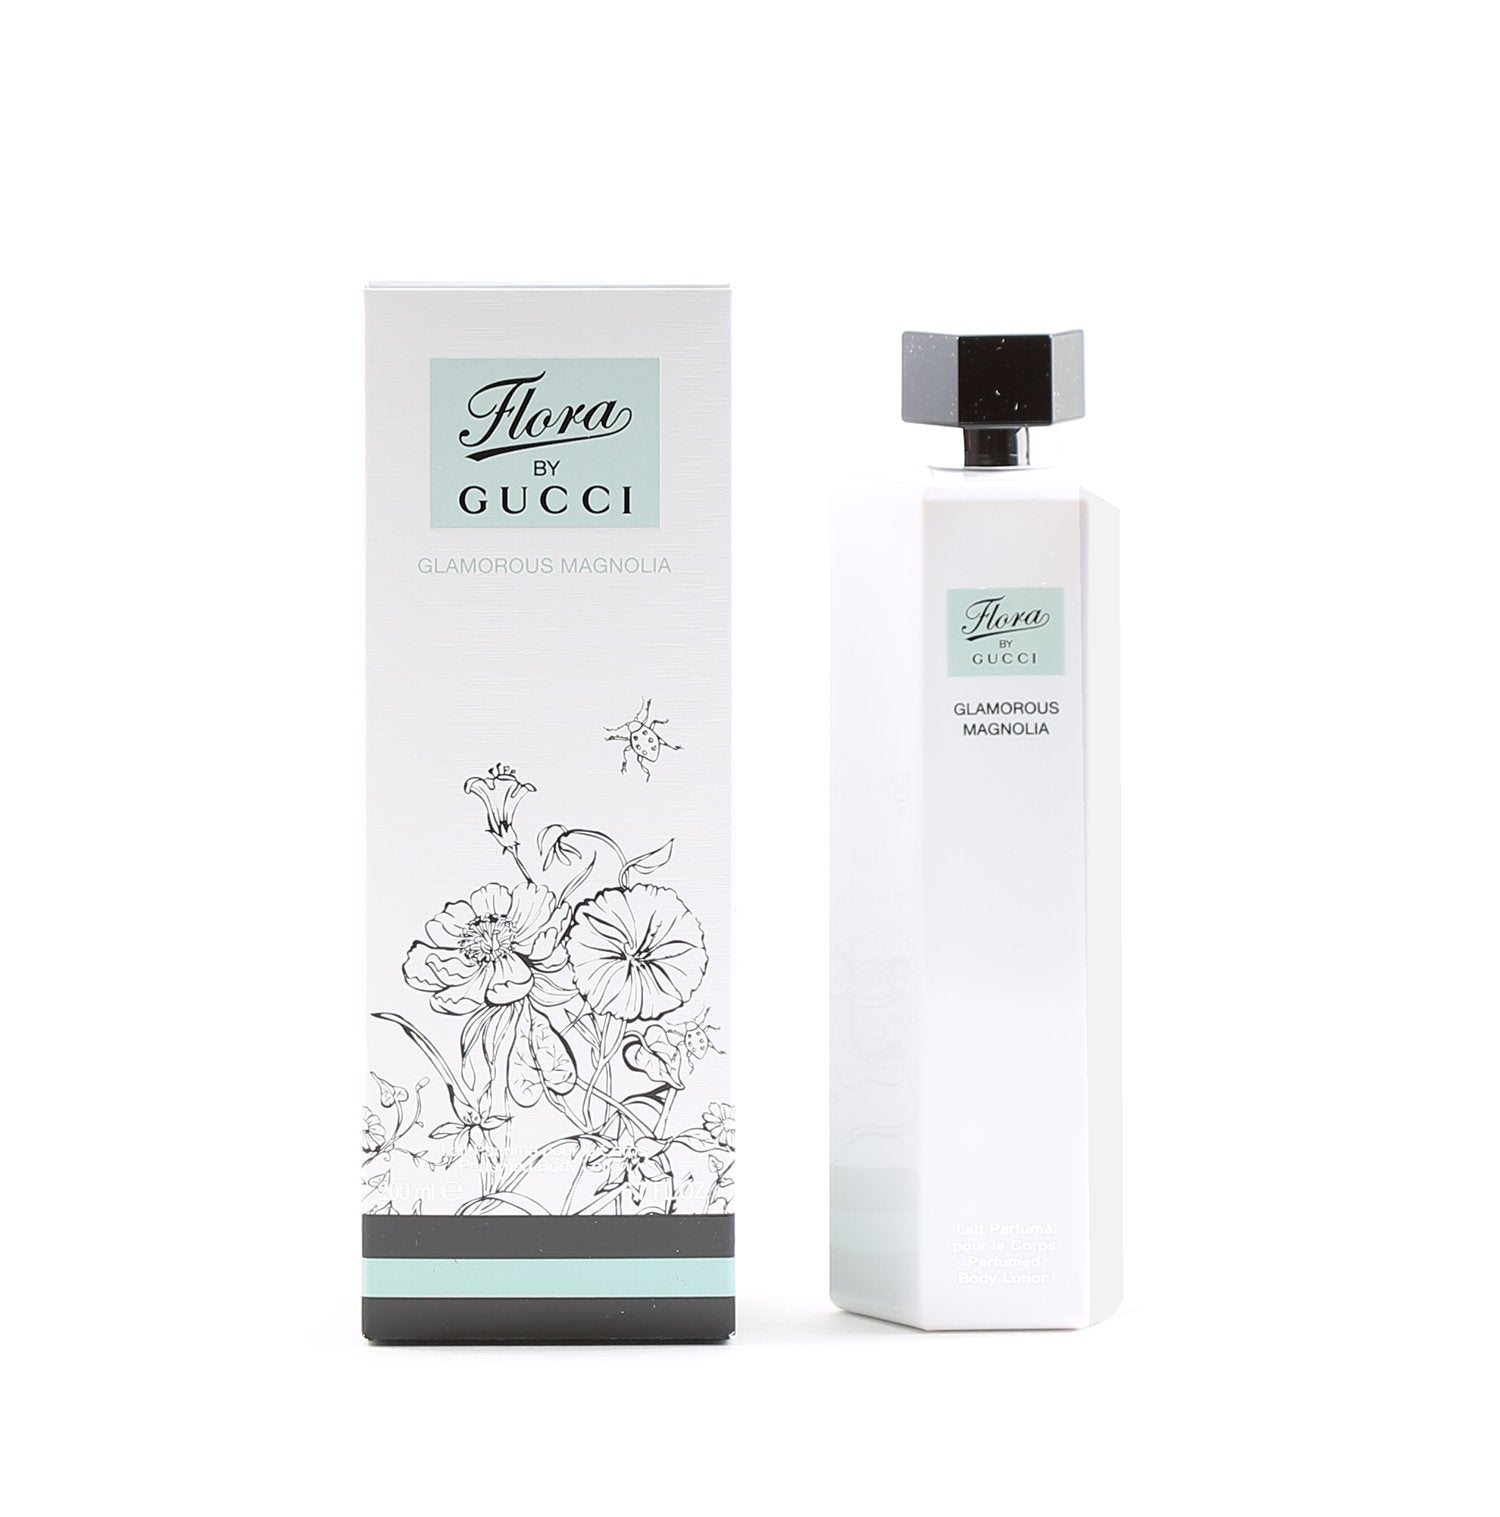 Perfume - GUCCI FLORA GLAMOROUS MAGNOLIA FOR WOMEN - BODY LOTION, 6.7 OZ